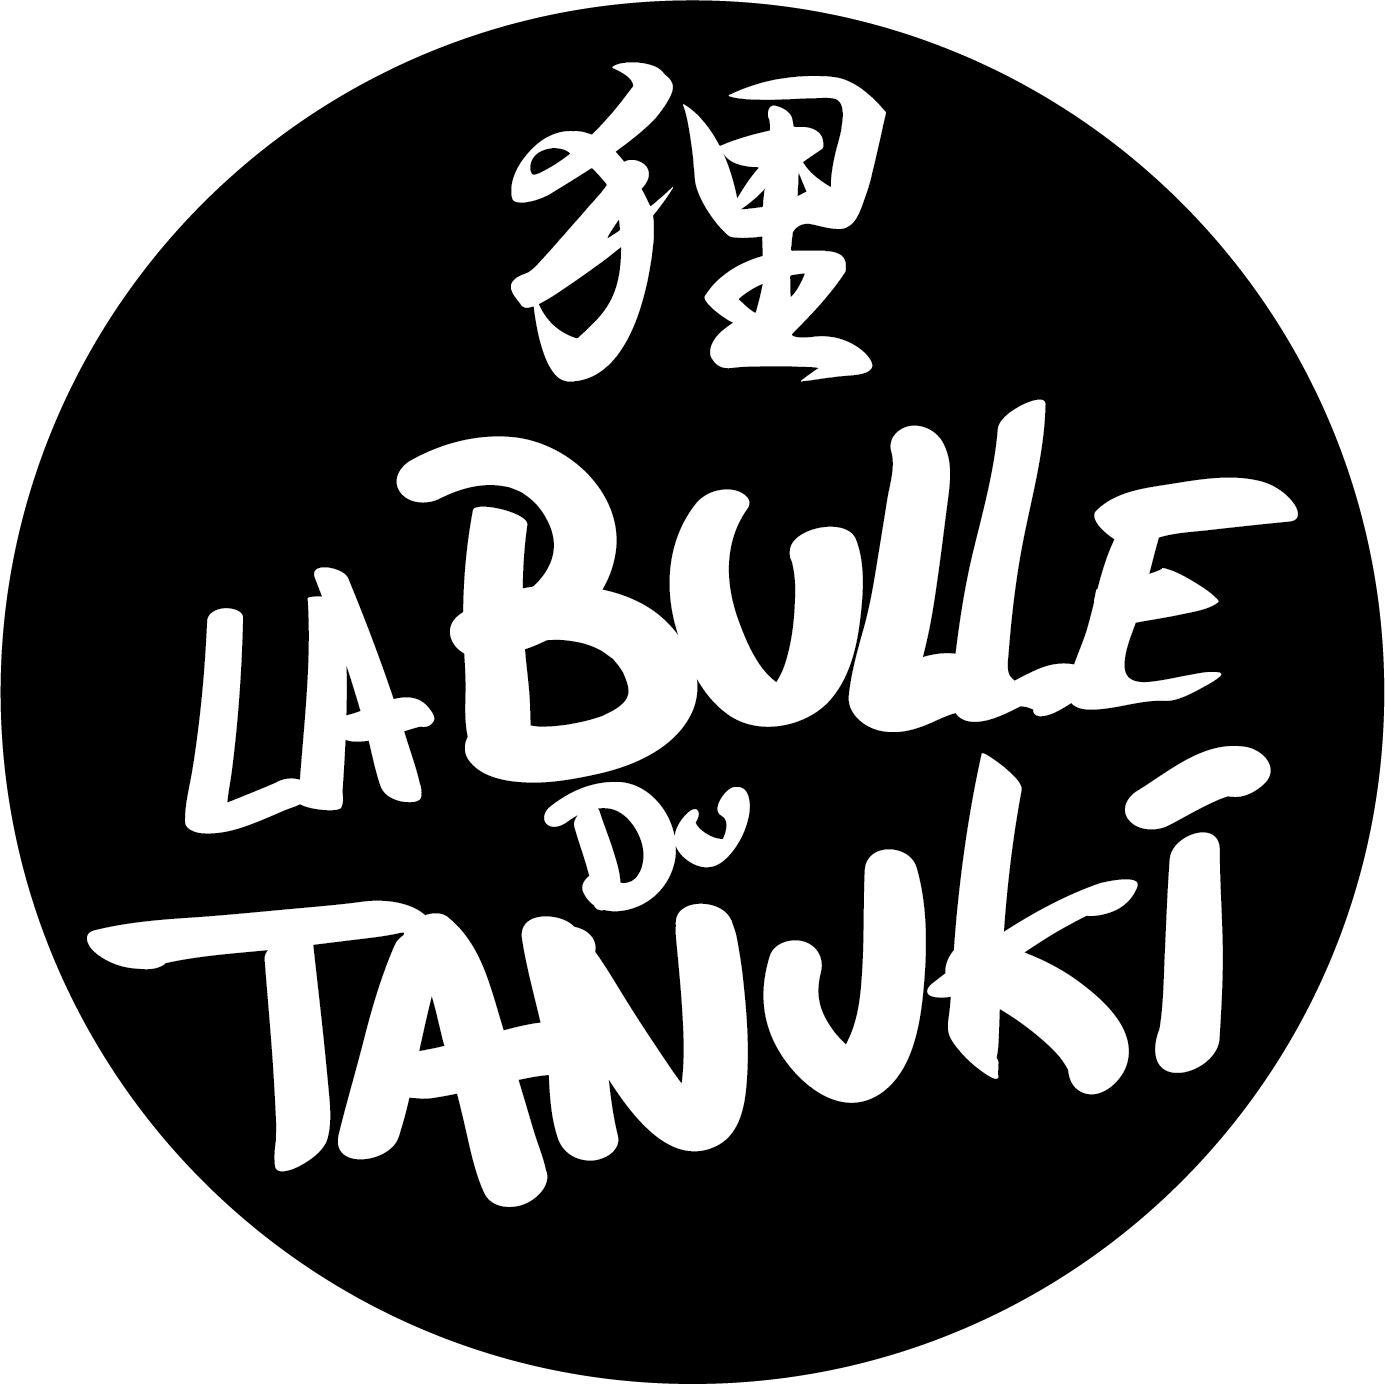 Librairie-café La Bulle du Tanuki